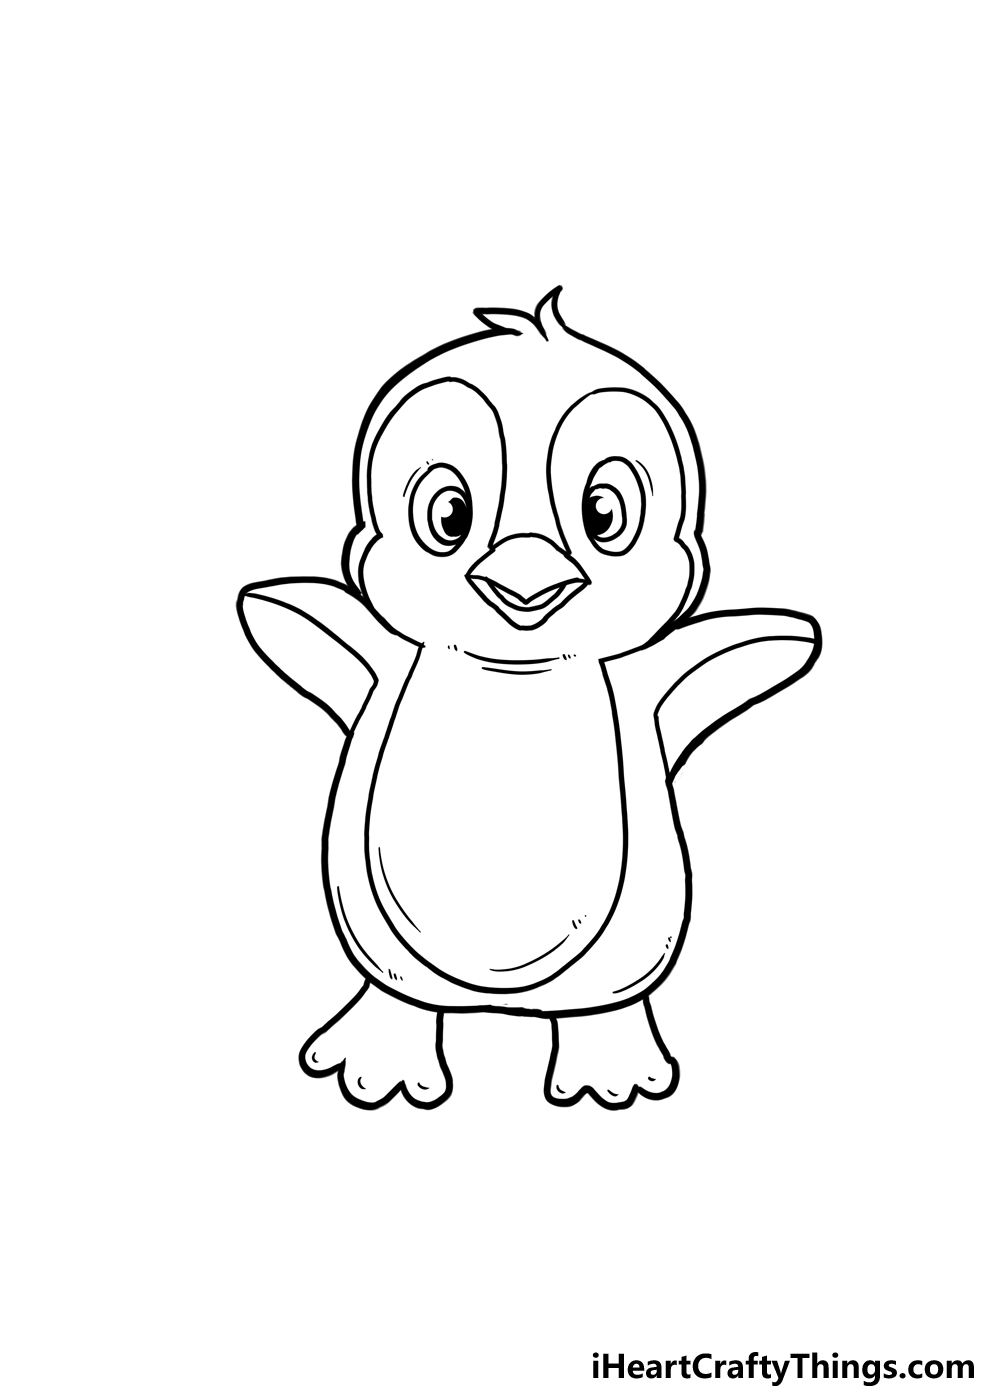 Penguin Cartoon Drawing Art